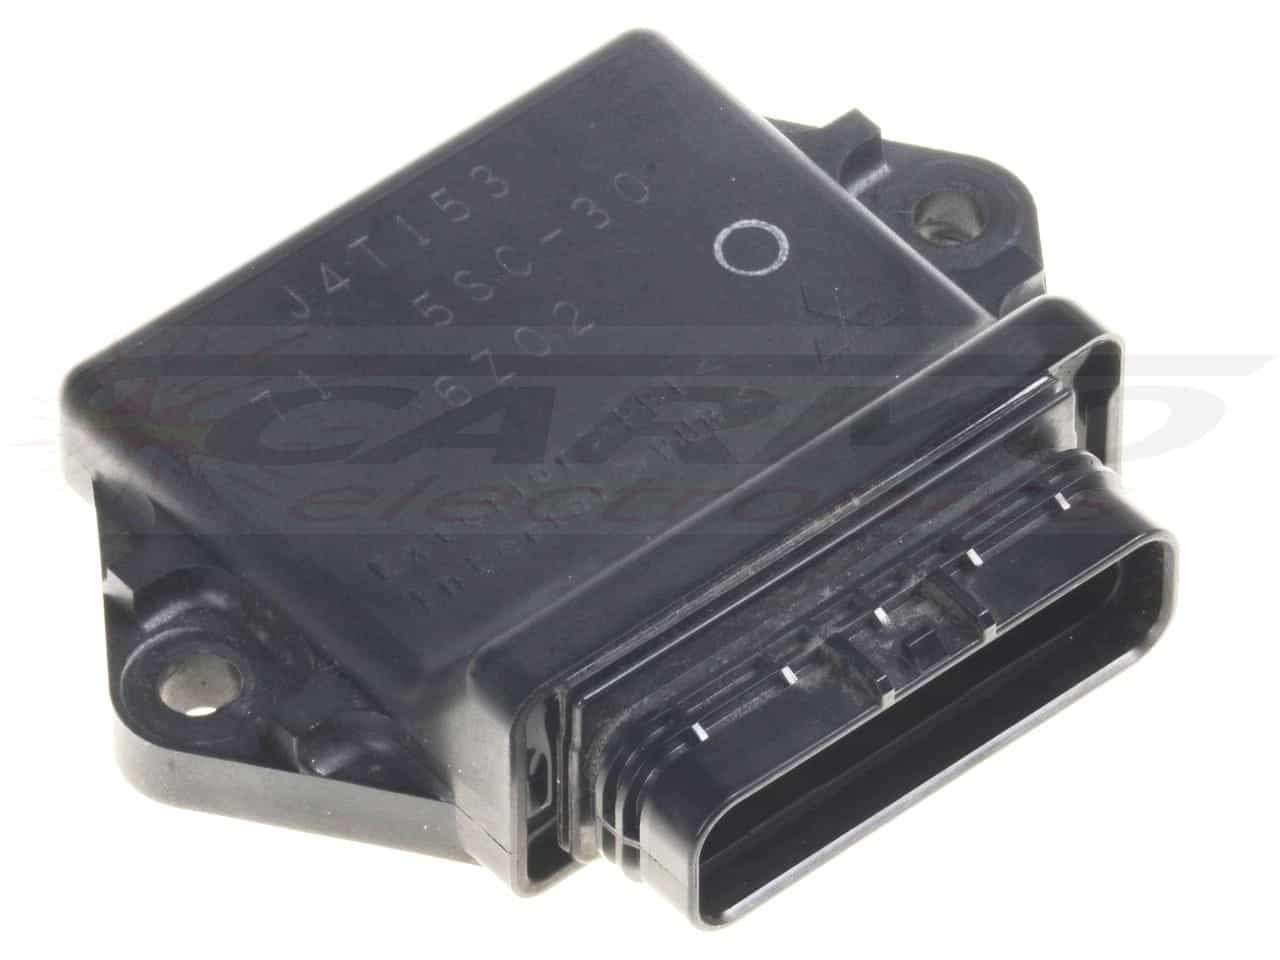 XVS650 Dragstar TCI CDI dispositif de commande boîte noire (J4T150, J4T153)